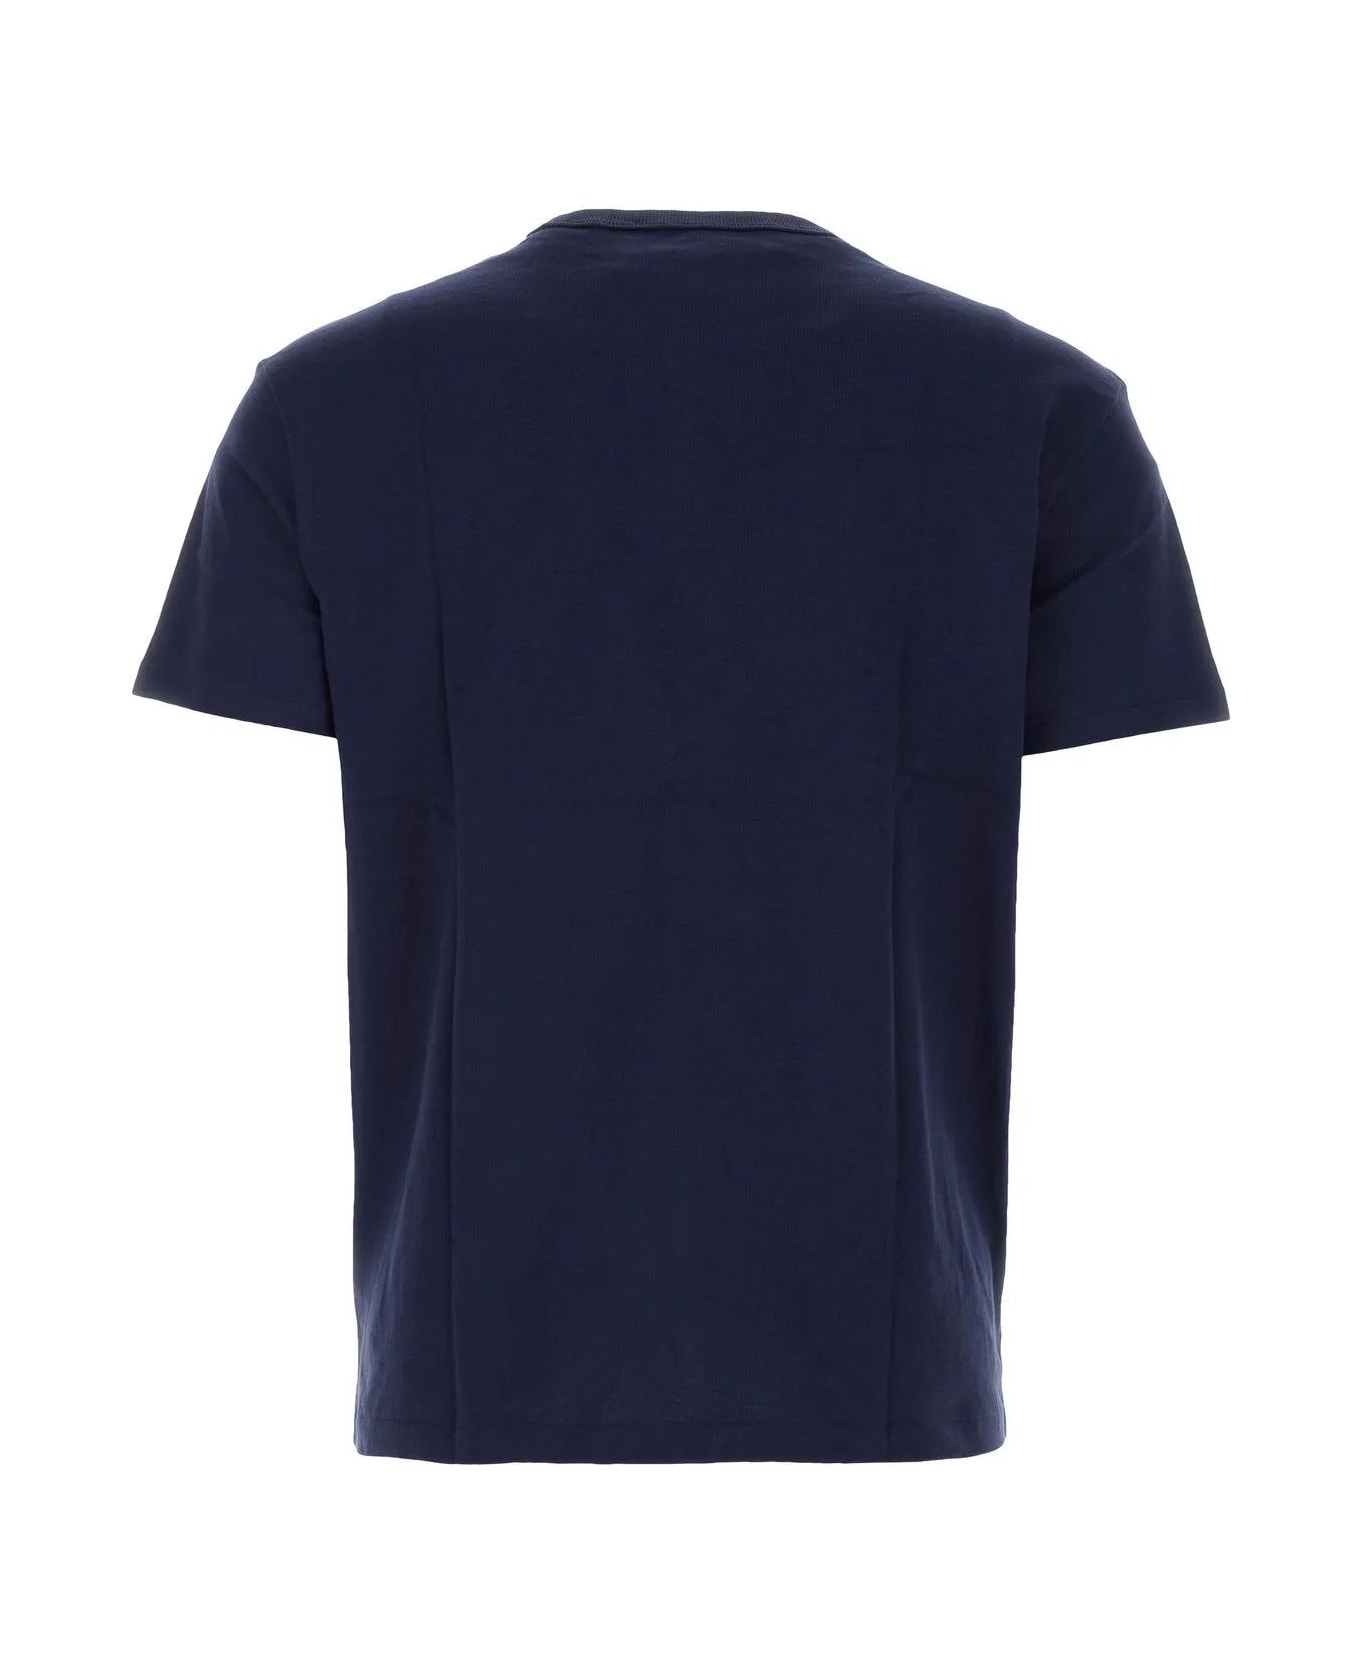 Ralph Lauren Midnight Blue Cotton T-shirt - Newport navy